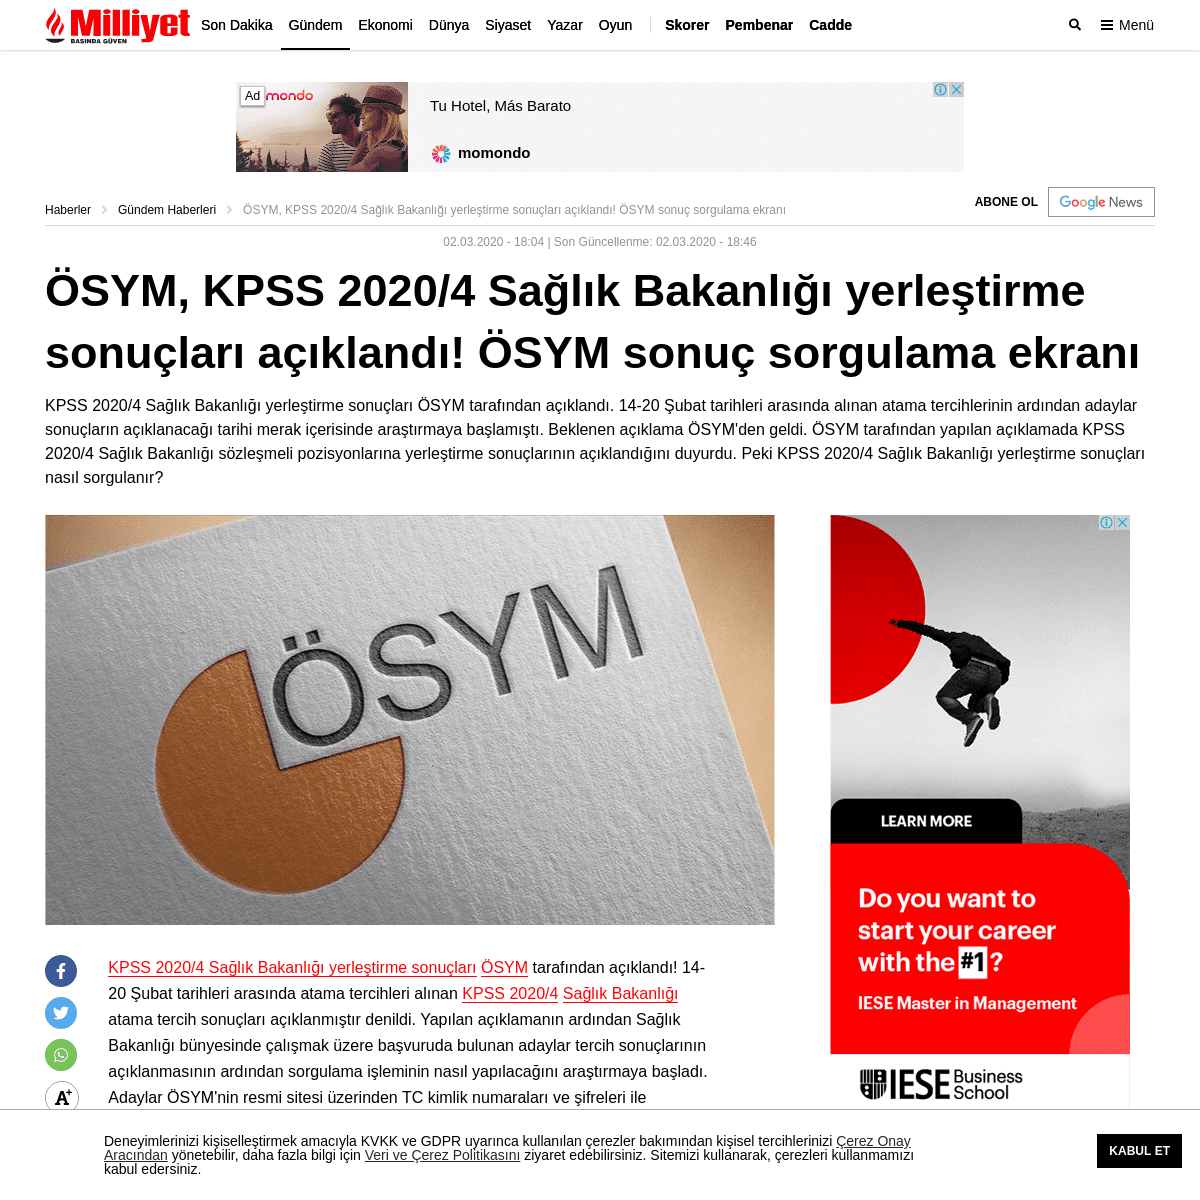 A complete backup of www.milliyet.com.tr/gundem/kpss-2020-4-saglik-bakanligi-yerlestirme-sonuclari-aciklandi-osym-kpss-2020-4-sa